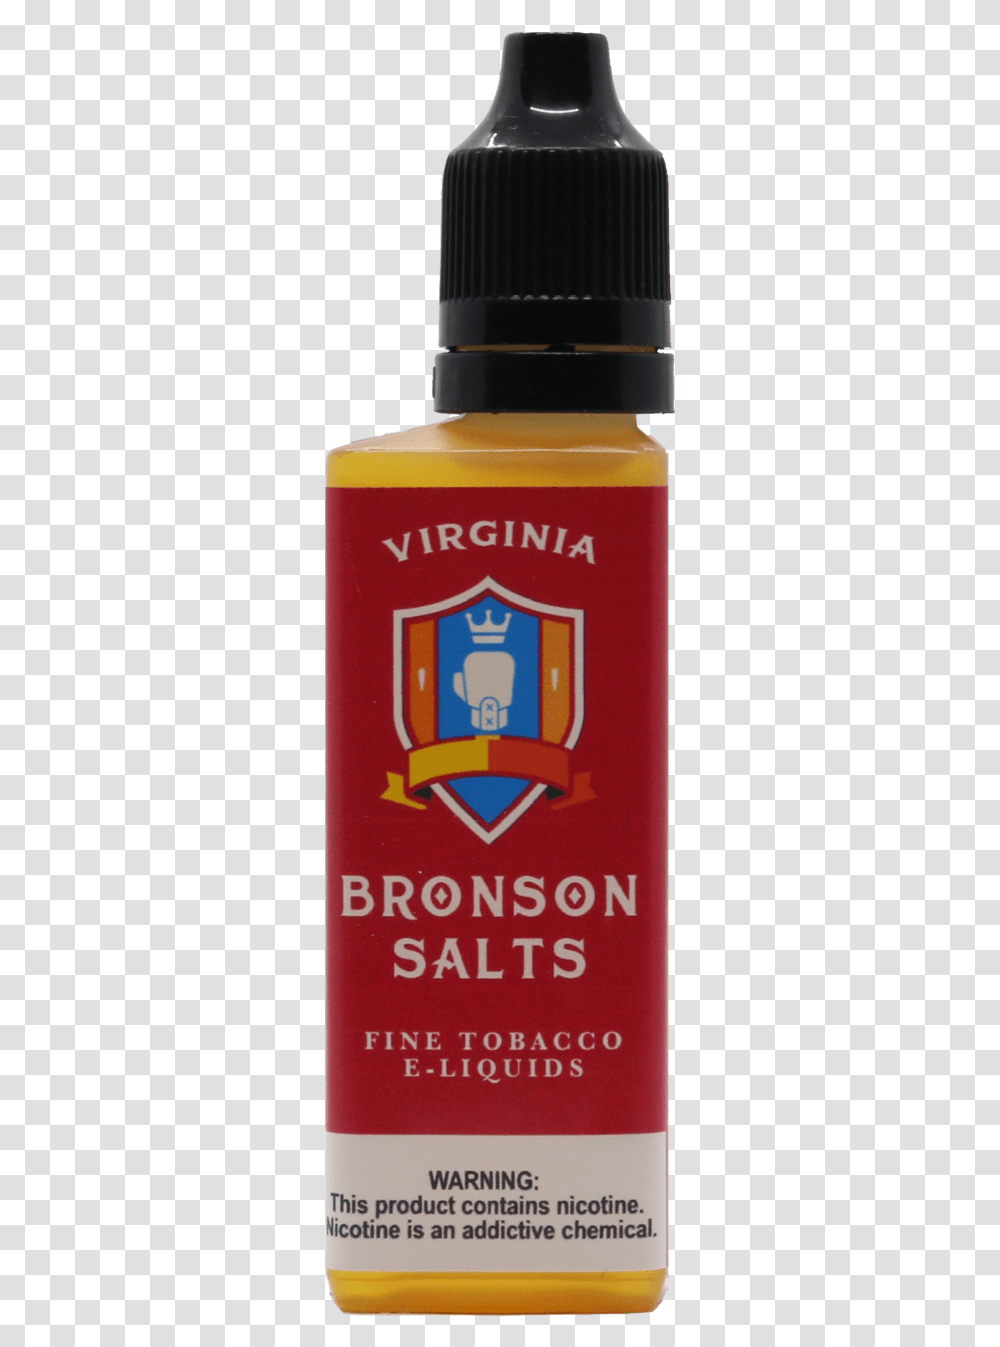 Virginia Tobacco Salt Nic, Label, Bottle, Beer Transparent Png